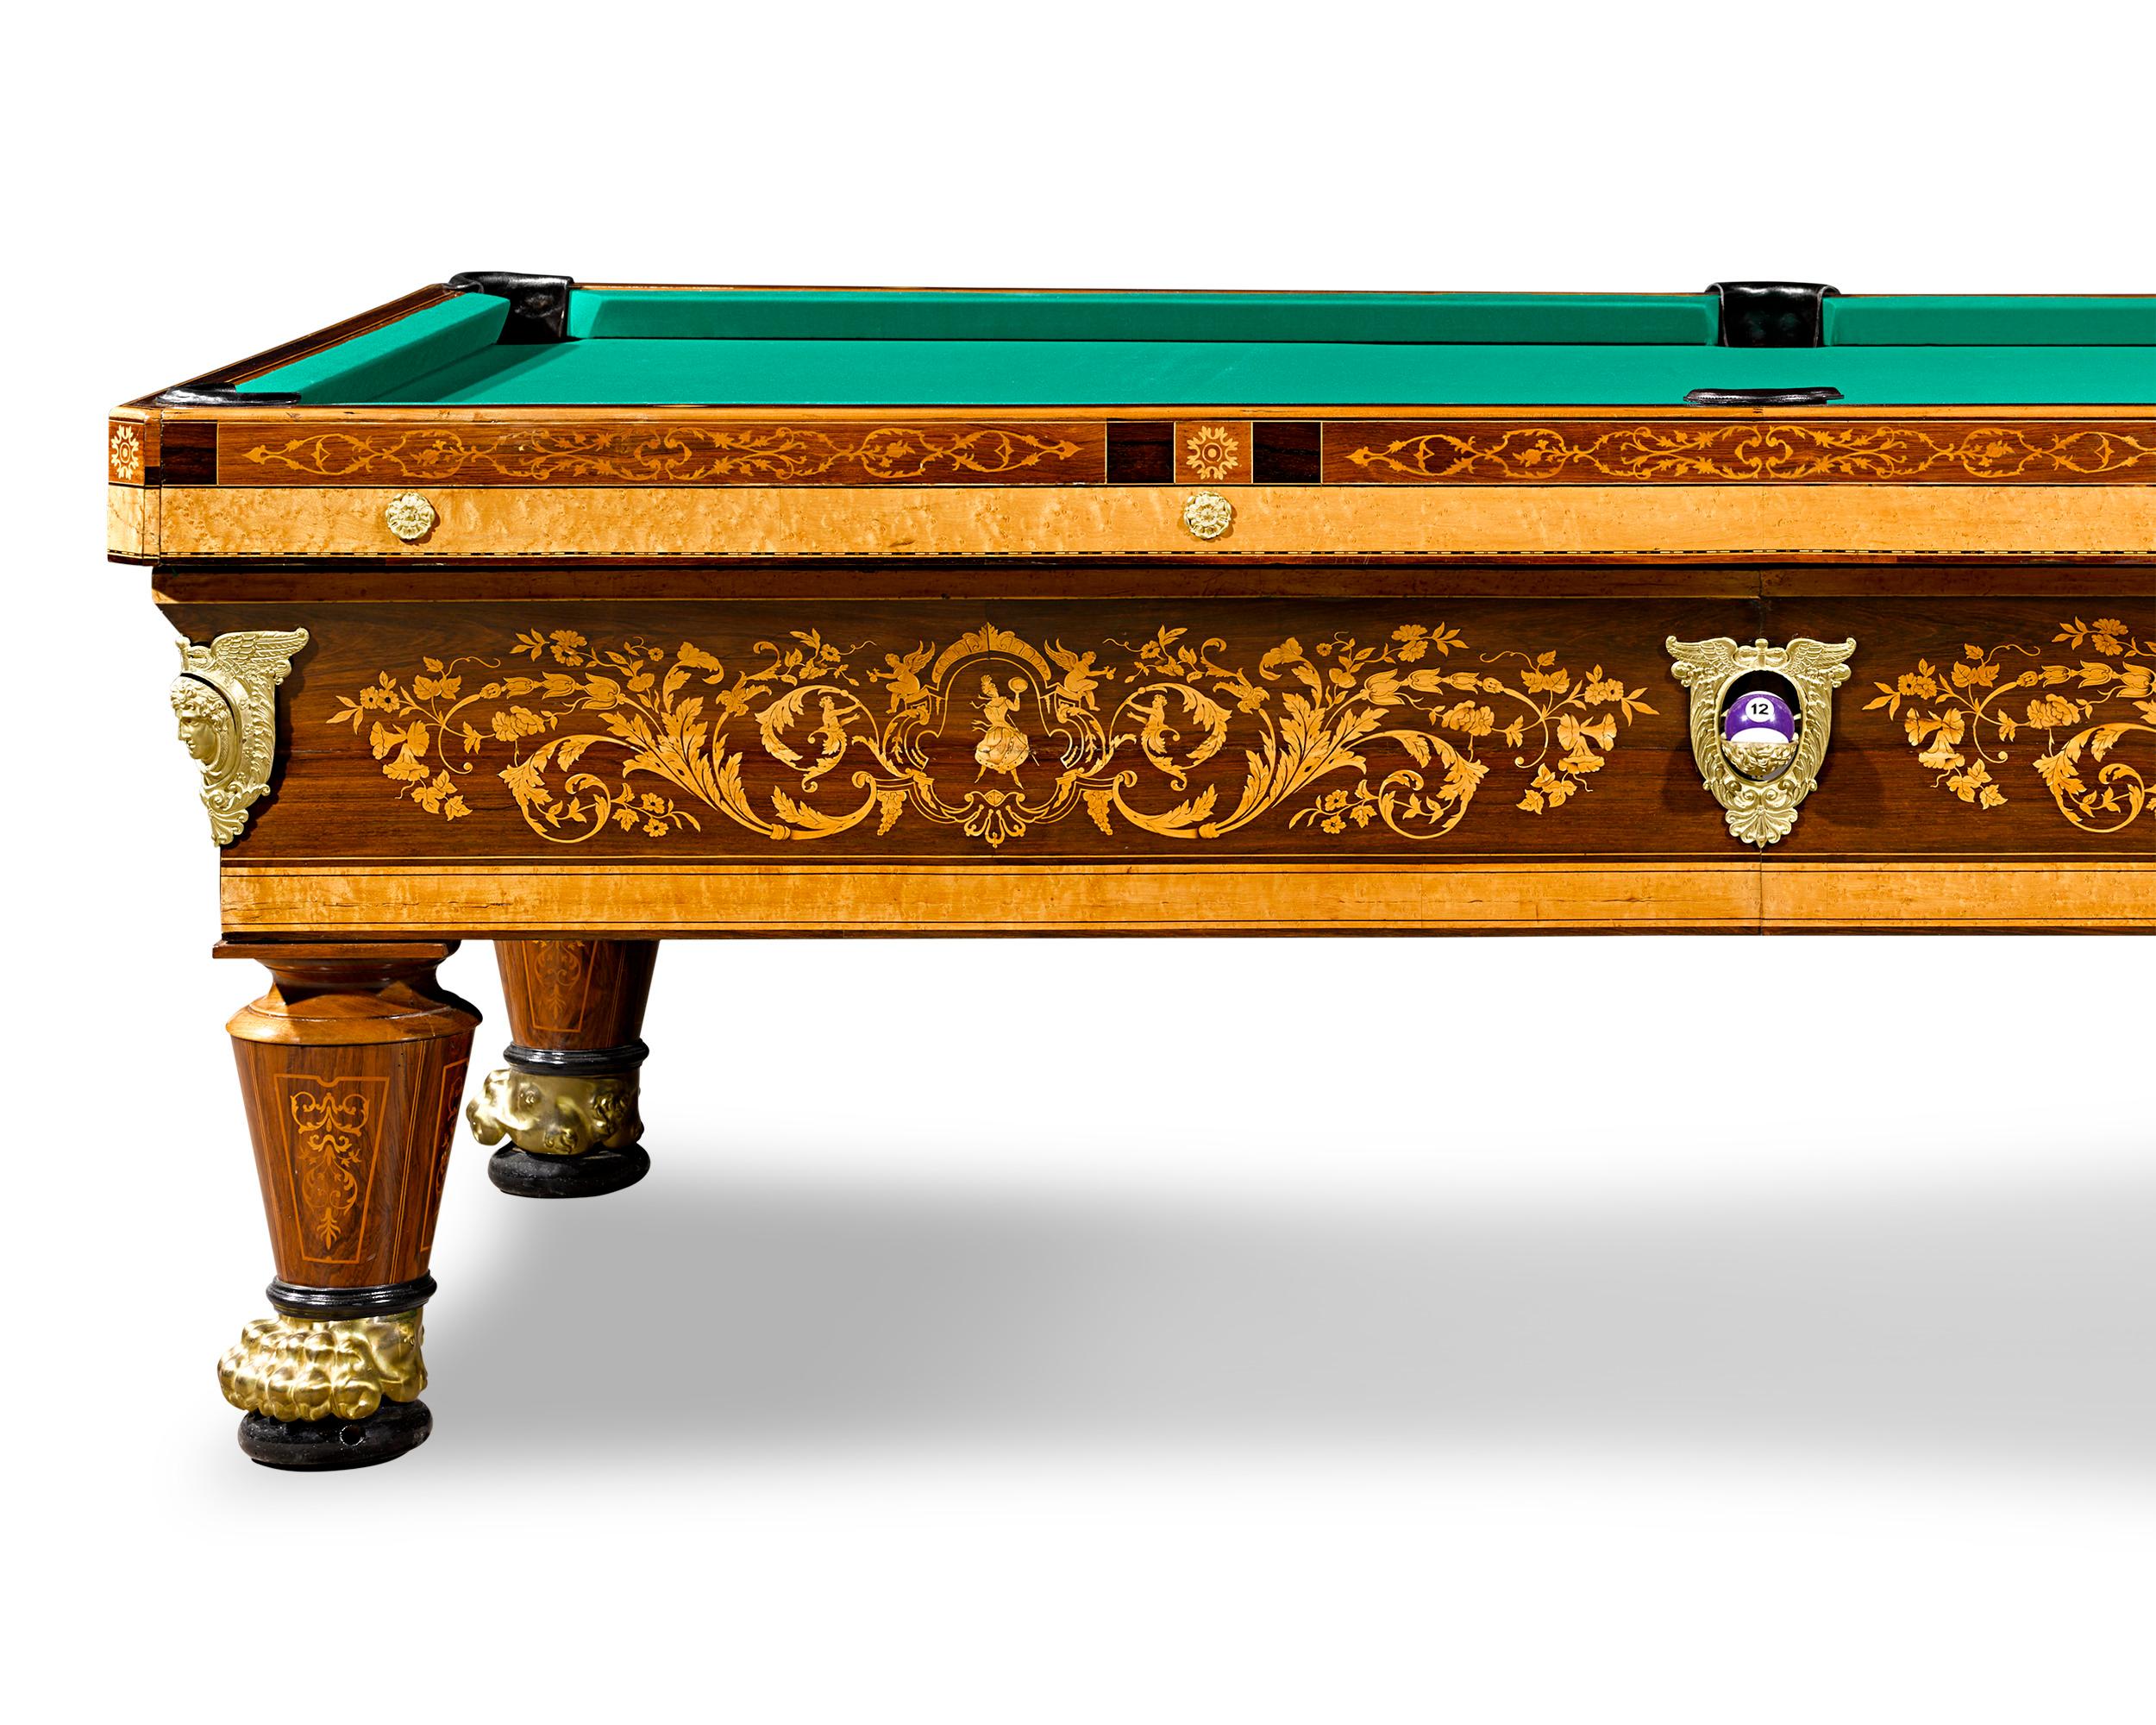 Magnifiquement construite, cette table de billard française a très certainement été fabriquée pour une maison de campagne aristocratique du XIXe siècle, une époque où le billard était un passe-temps privilégié de l'élite européenne. Son design